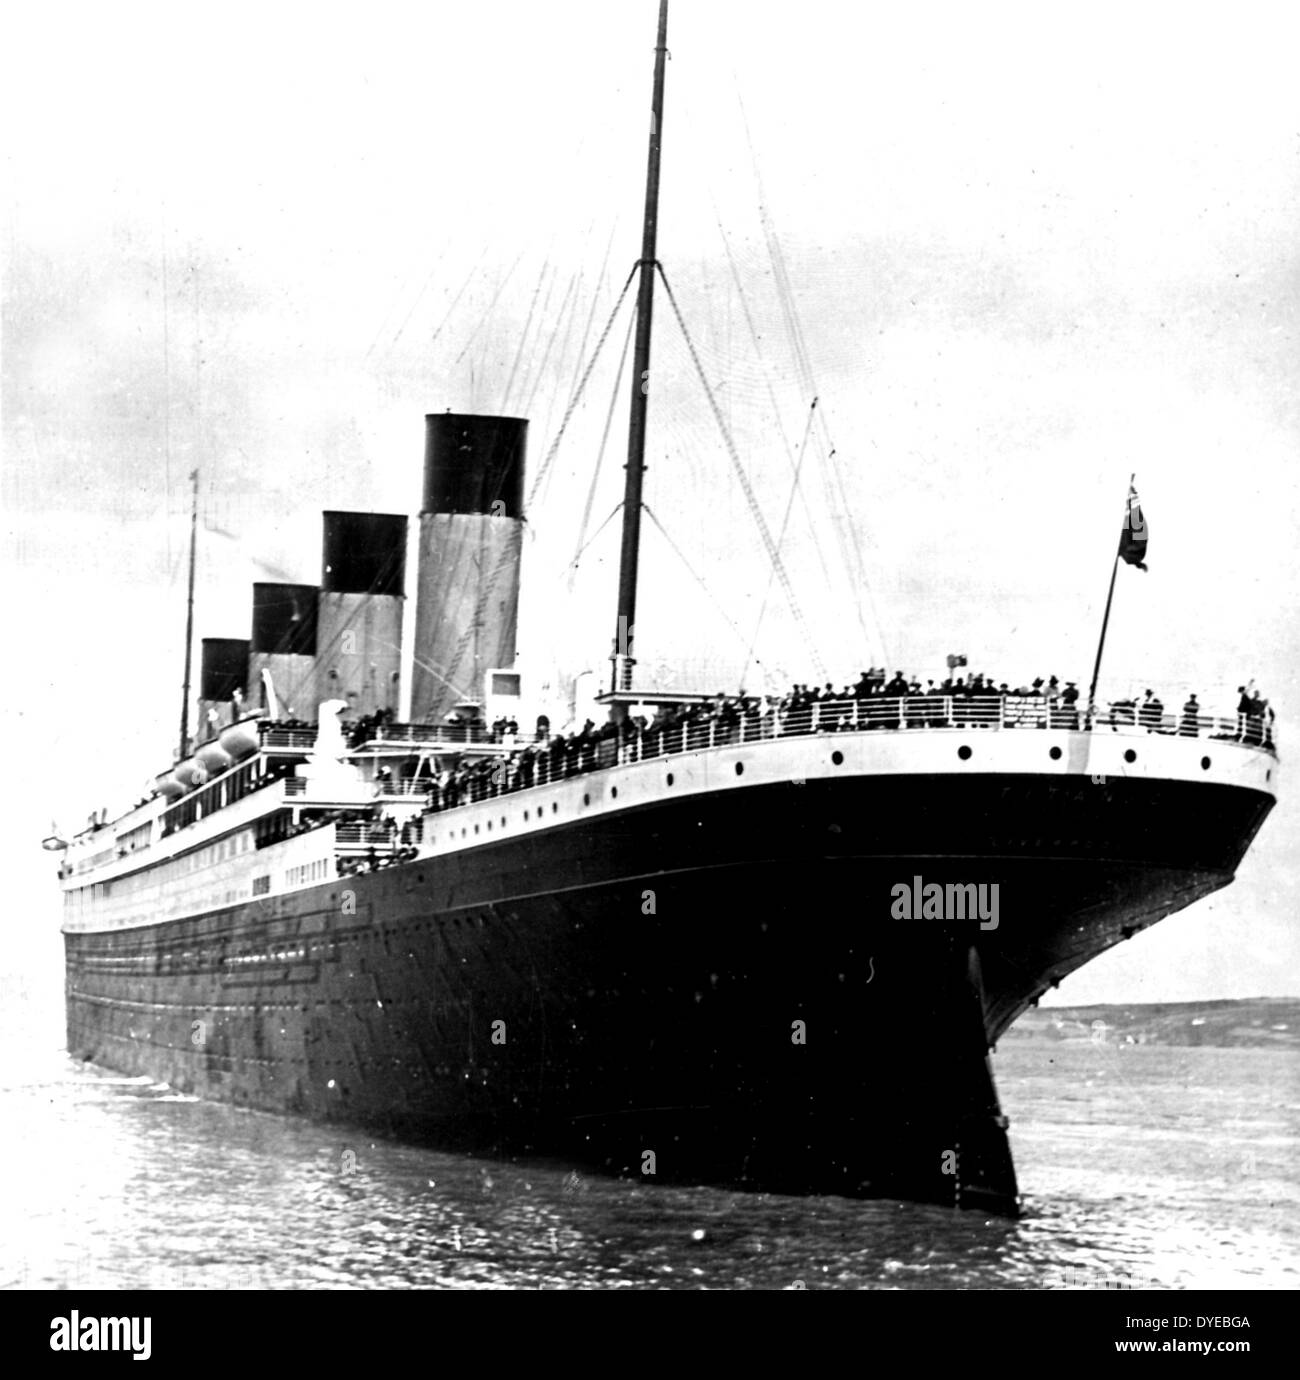 RMS Titanic war ein britisches Passagierschiff, das im Nordatlantik am 15. April 1912 nach einer Kollision mit einem Eisberg während seiner Jungfernfahrt von Southampton, UK, New York City, USA sank. Der Untergang der Titanic verursacht den Tod von 1.502 Menschen in eine der tödlichsten Friedenszeiten Schiffskatastrophen der modernen Geschichte. Stockfoto